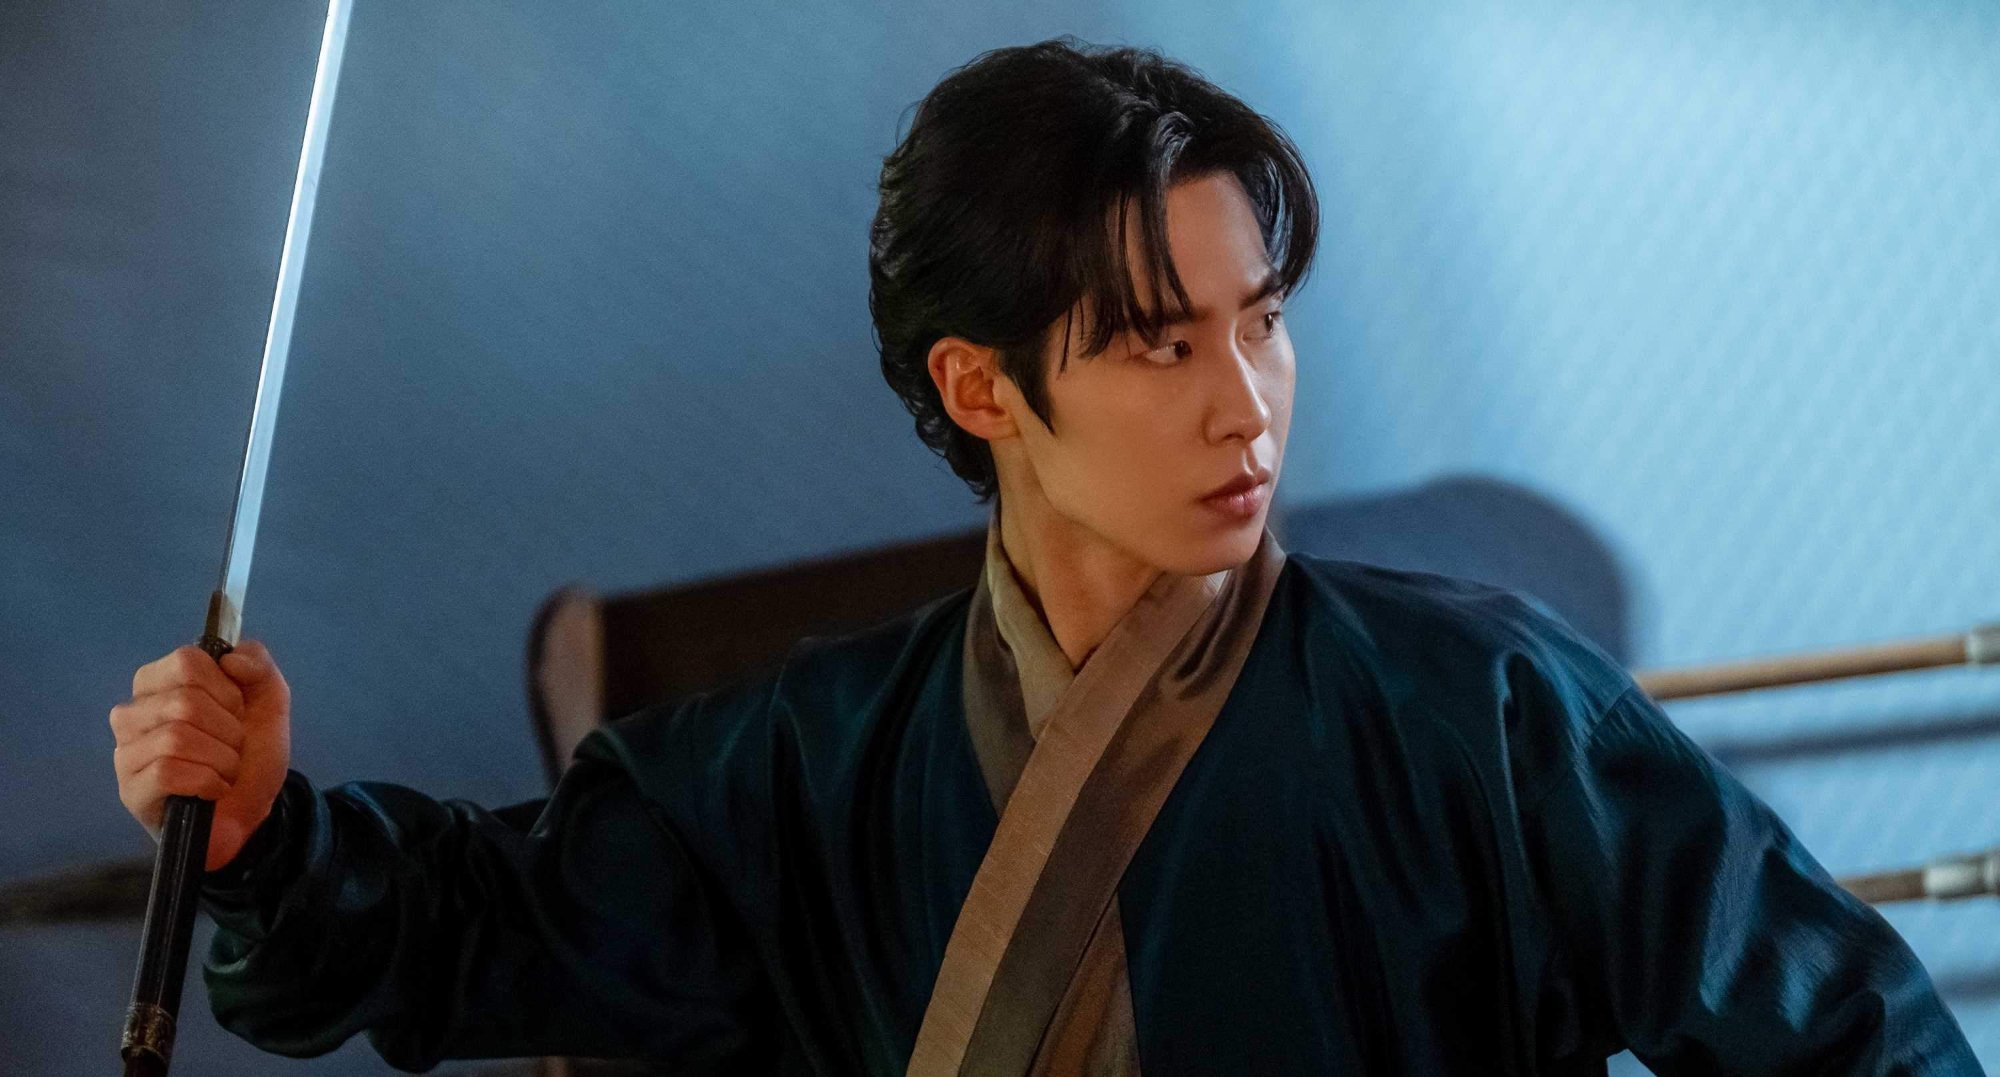 Lee Jae-wook returns as Jang Uk in 'Alchemy of Souls' Season 2 for Netflix.